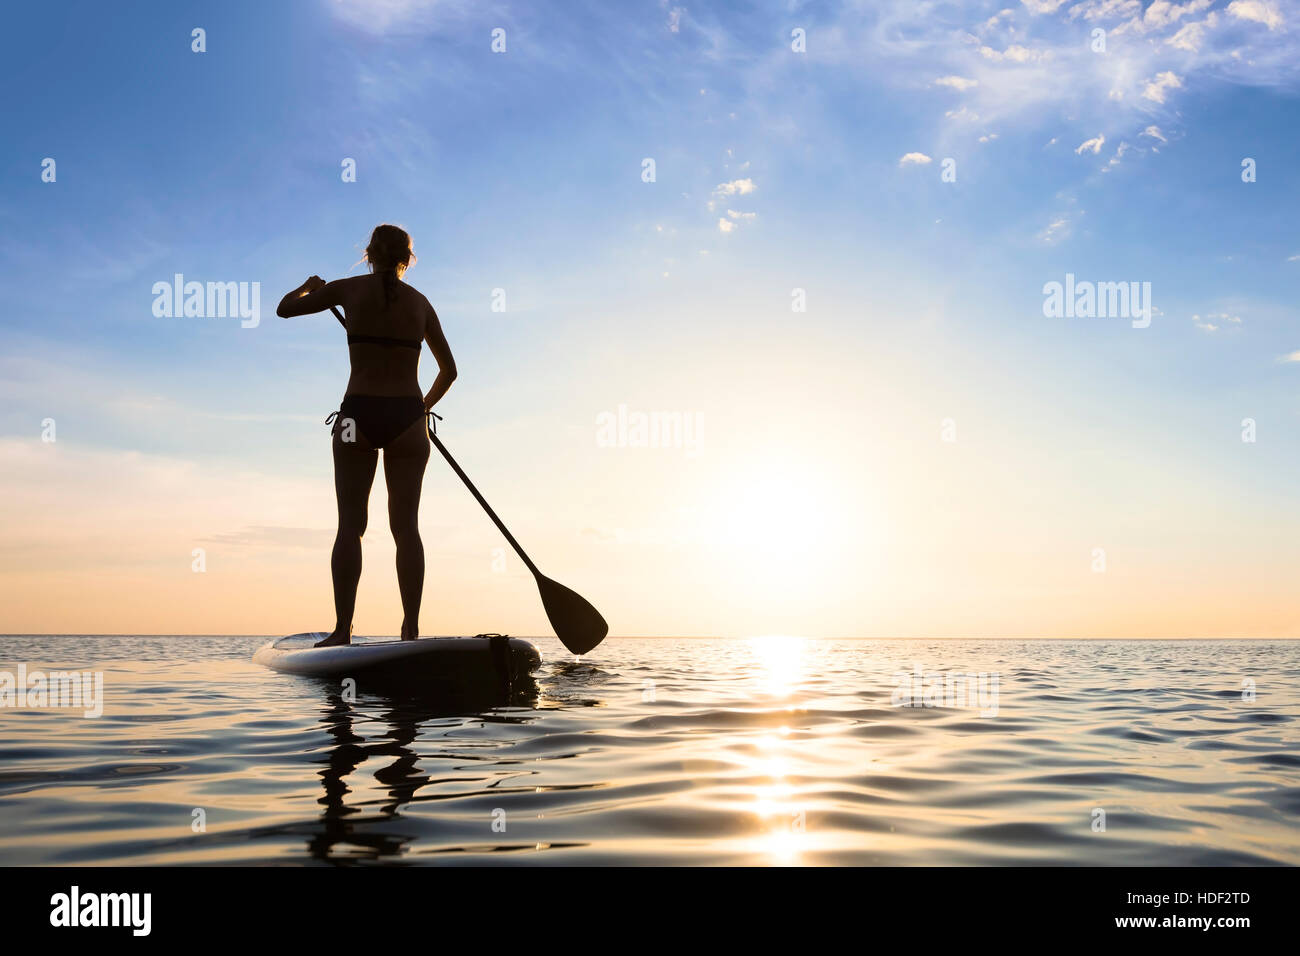 Ragazza stand up paddle boarding (sup) sul mare tranquillo al tramonto Foto Stock